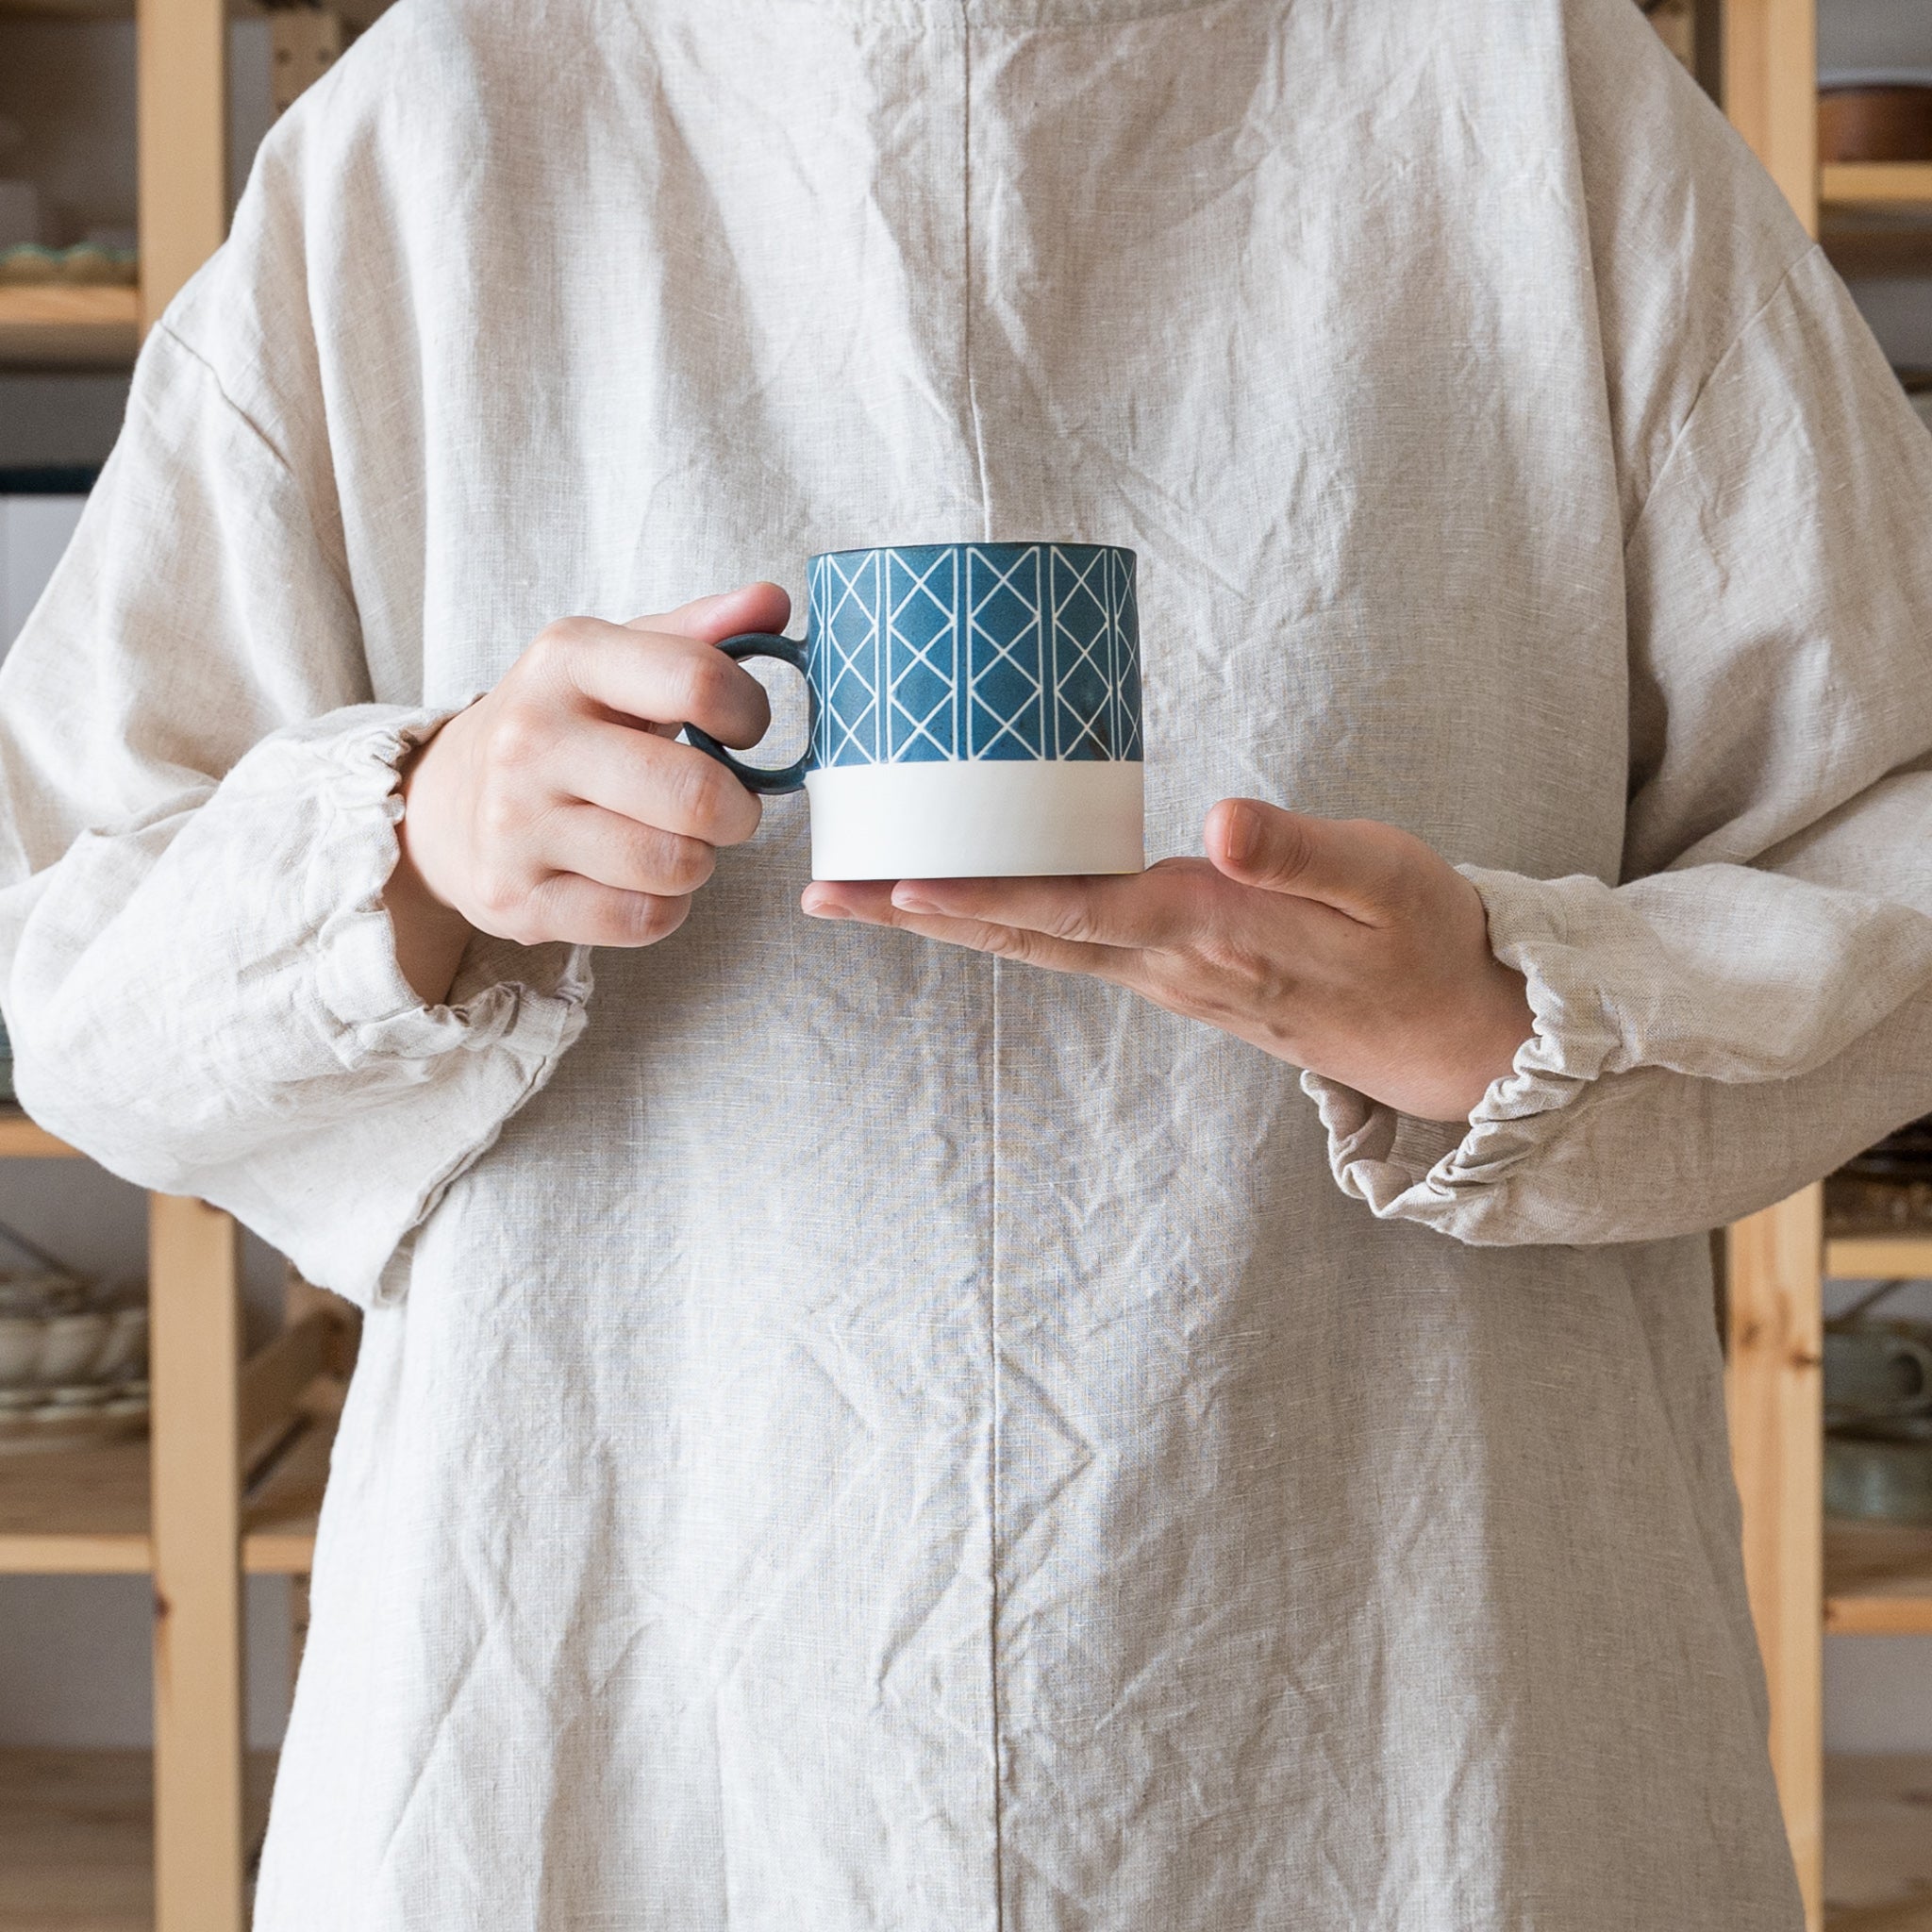 Yukari Nakagawa's stylish mug with geometric patterns and soft blue